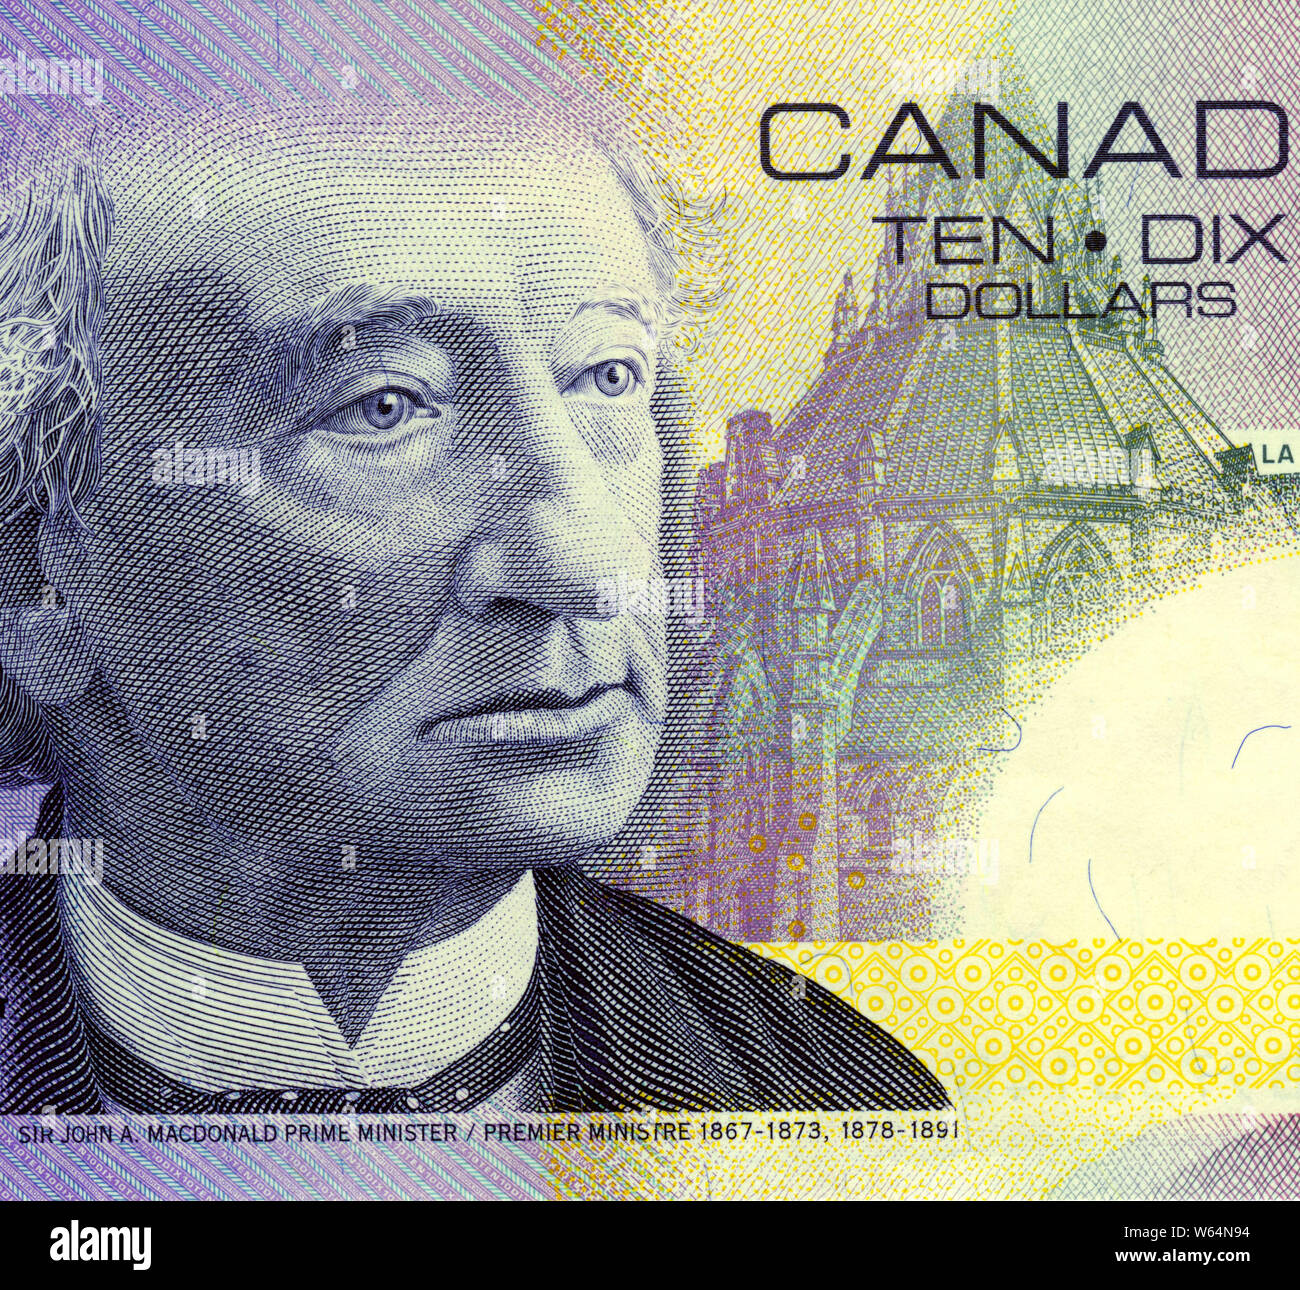 Incisi ritratto di Sir John un MacDonald, primo ministro del Canada in primo piano il loro 10 dollar nota Foto Stock